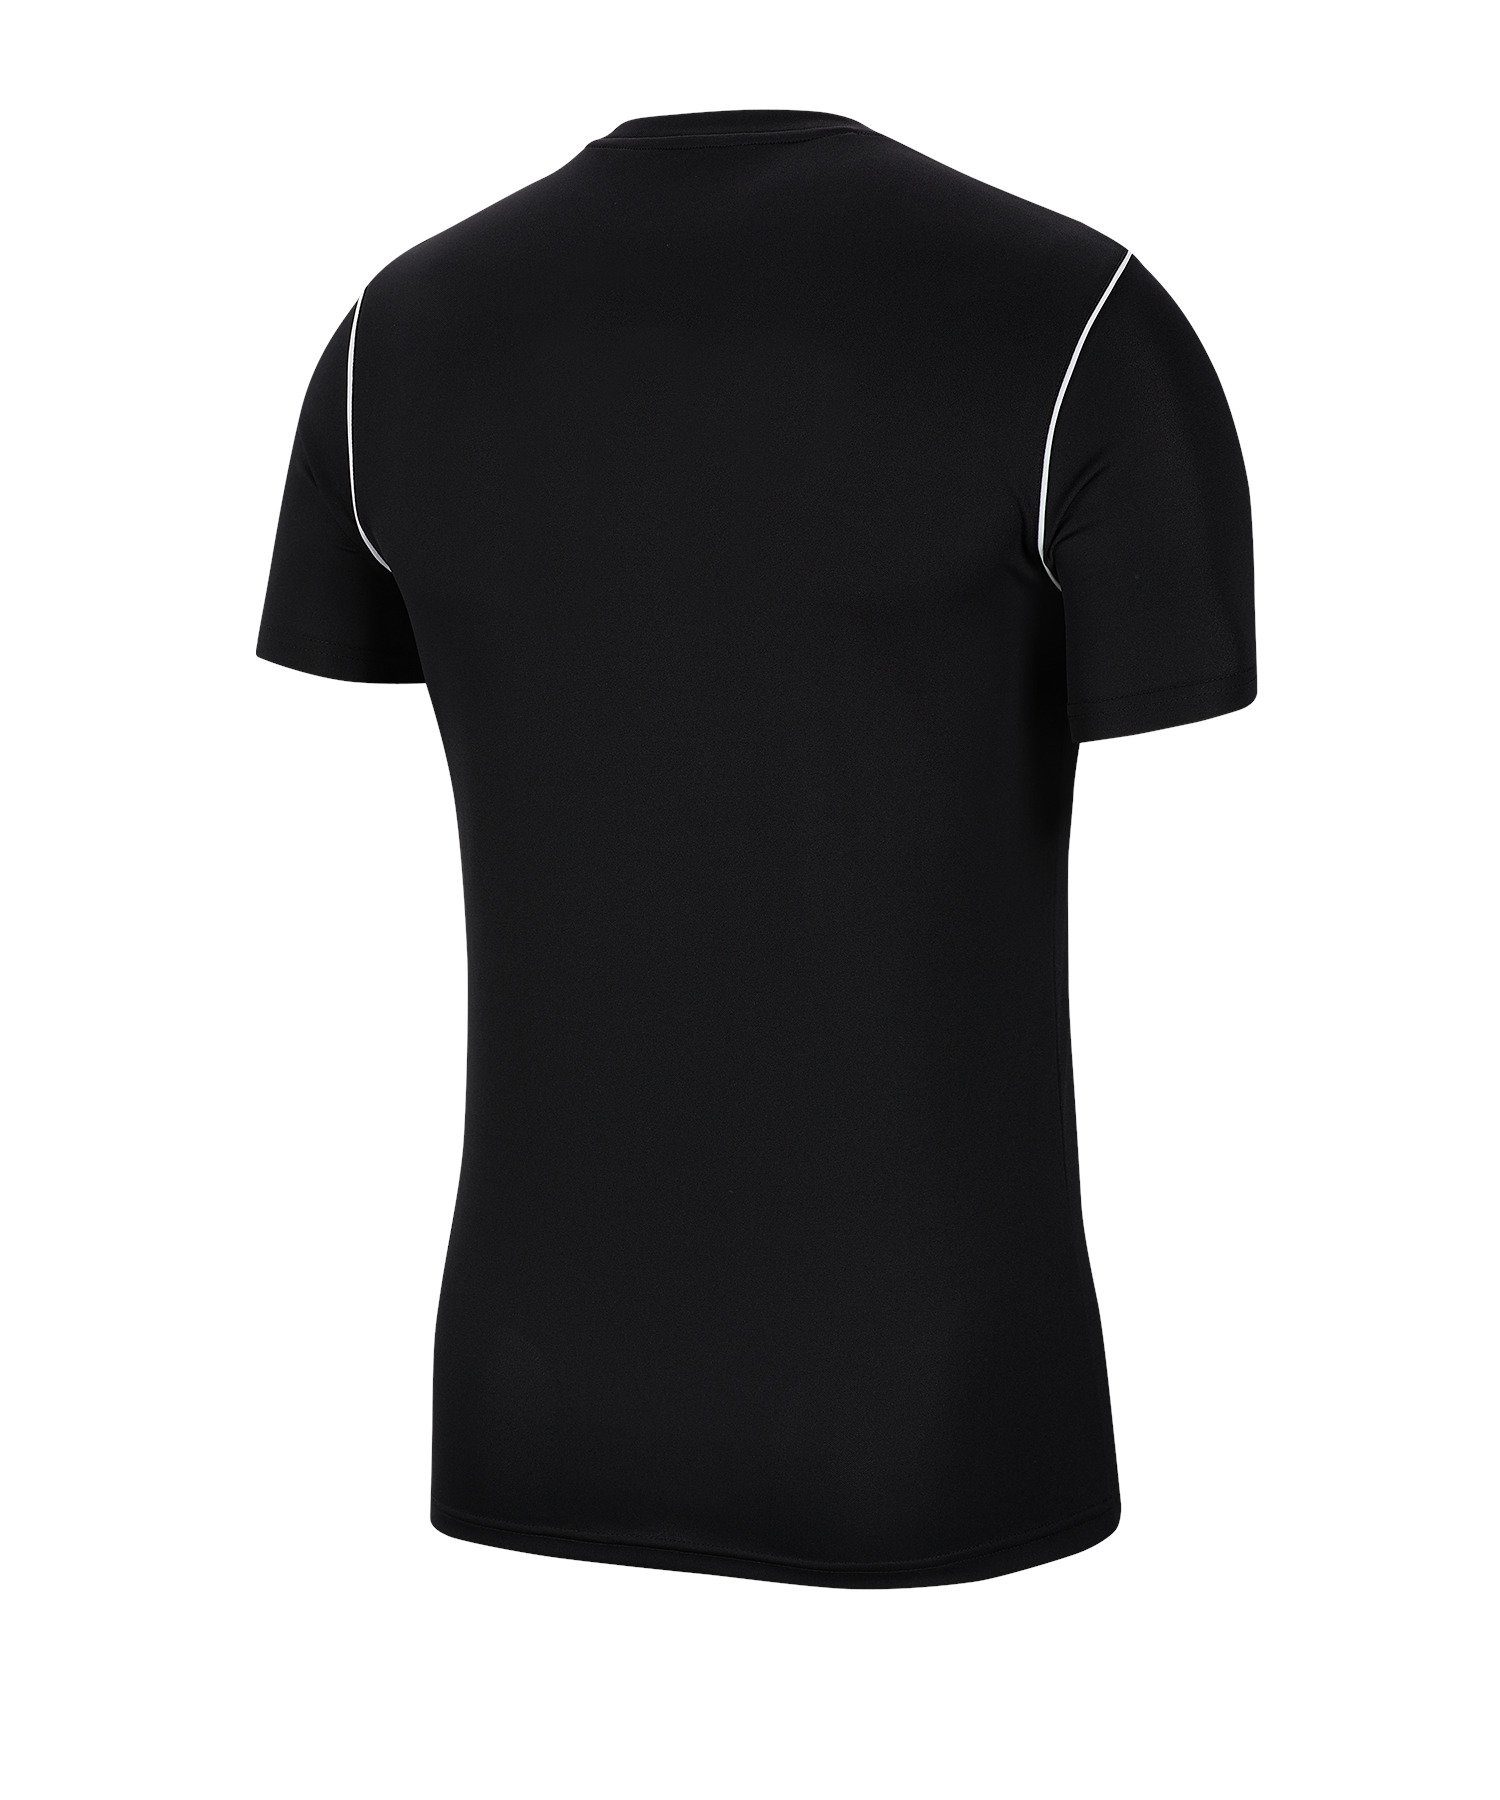 Nike T-Shirt Park 20 T-Shirt schwarzweiss Kids default